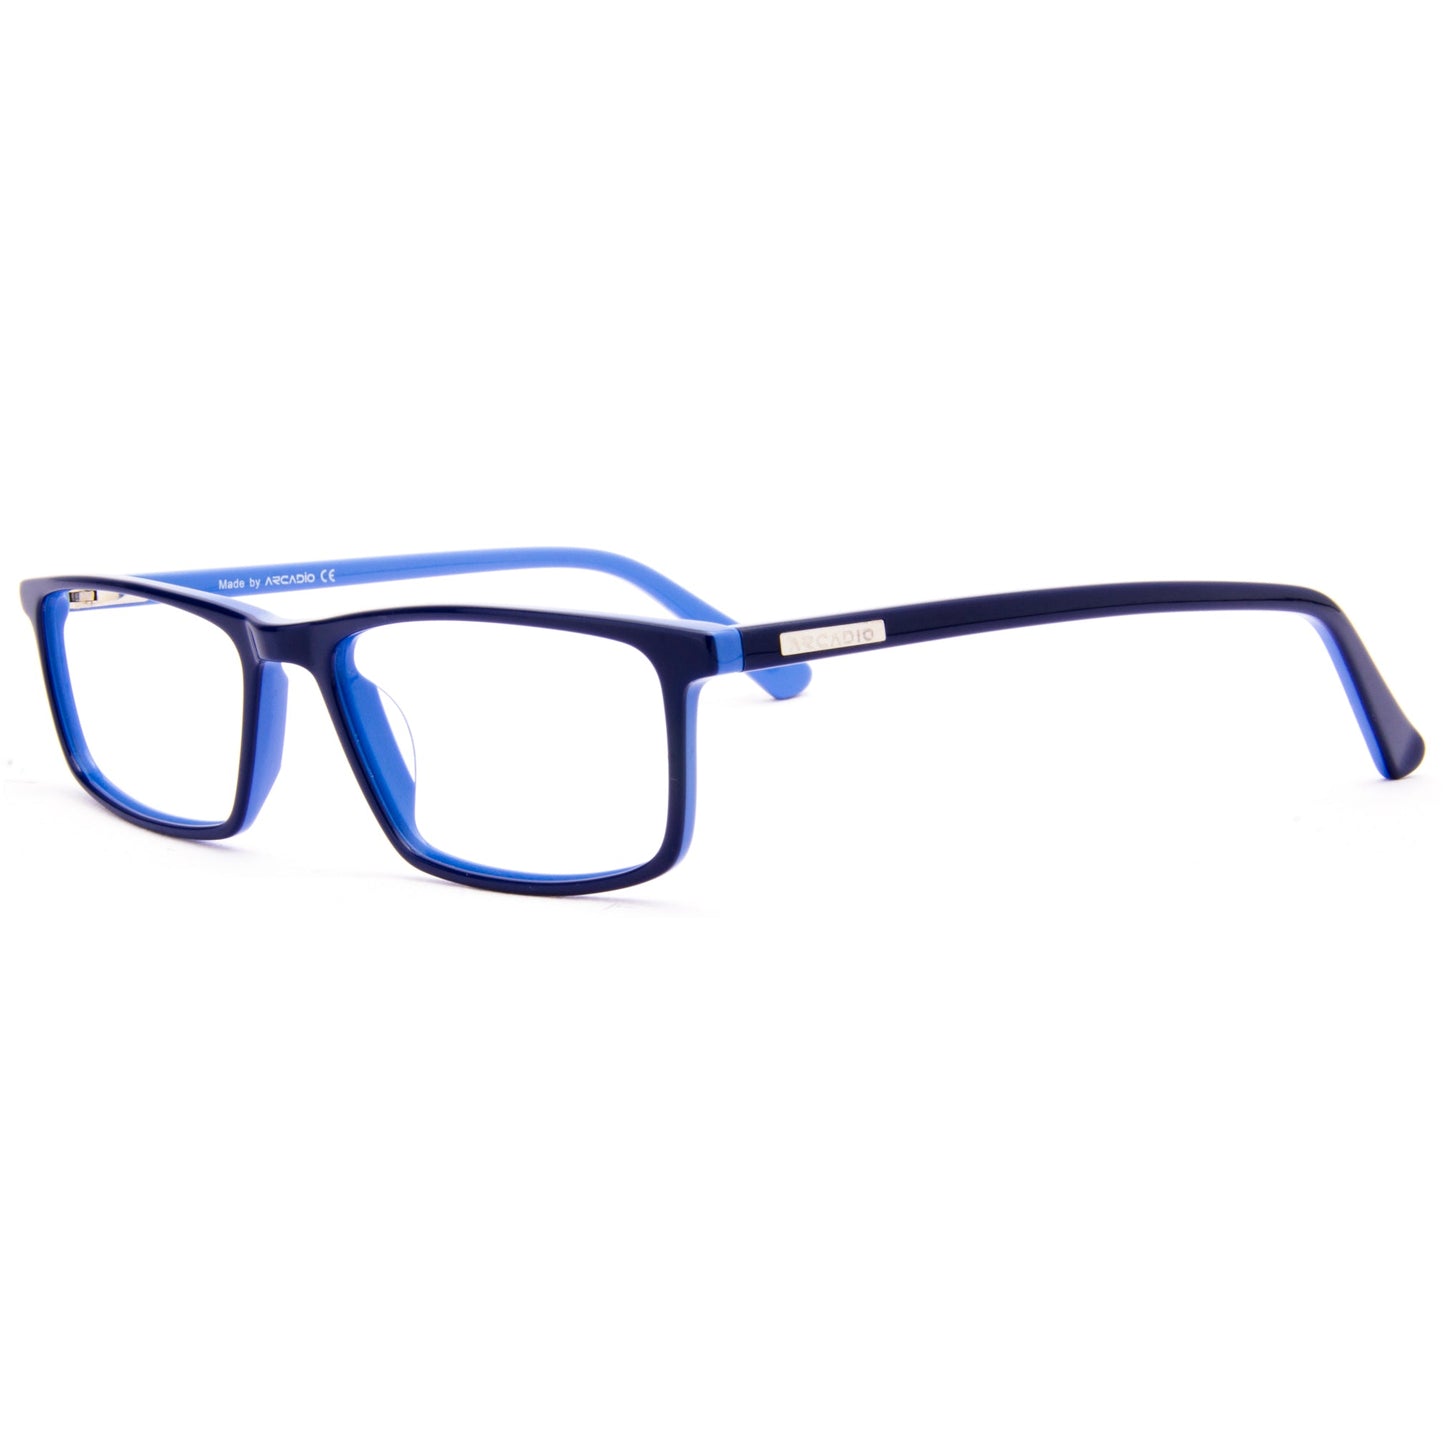 BRAVO Minimalist Eyeglasses for Teens SF4445 ARCADIO